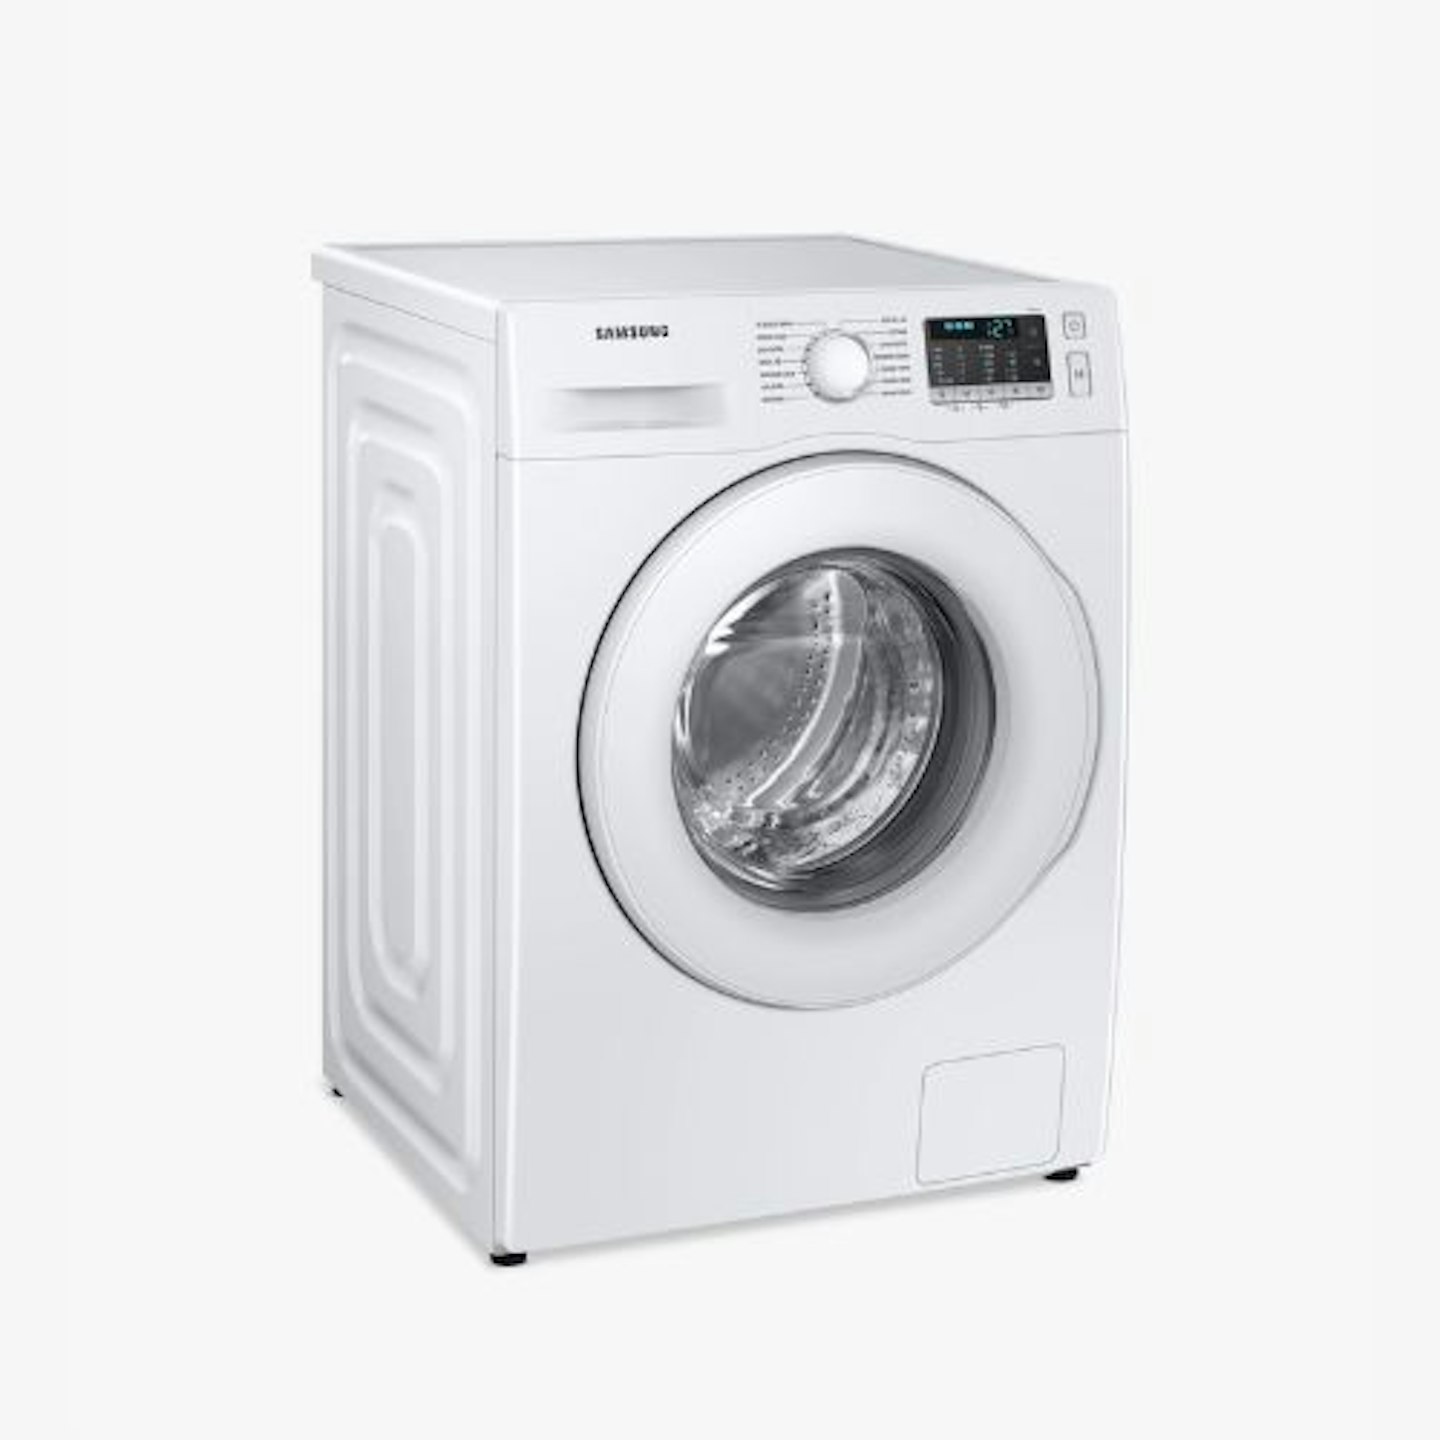 Samsung, S5 Freestanding Washing Machine, 9kg